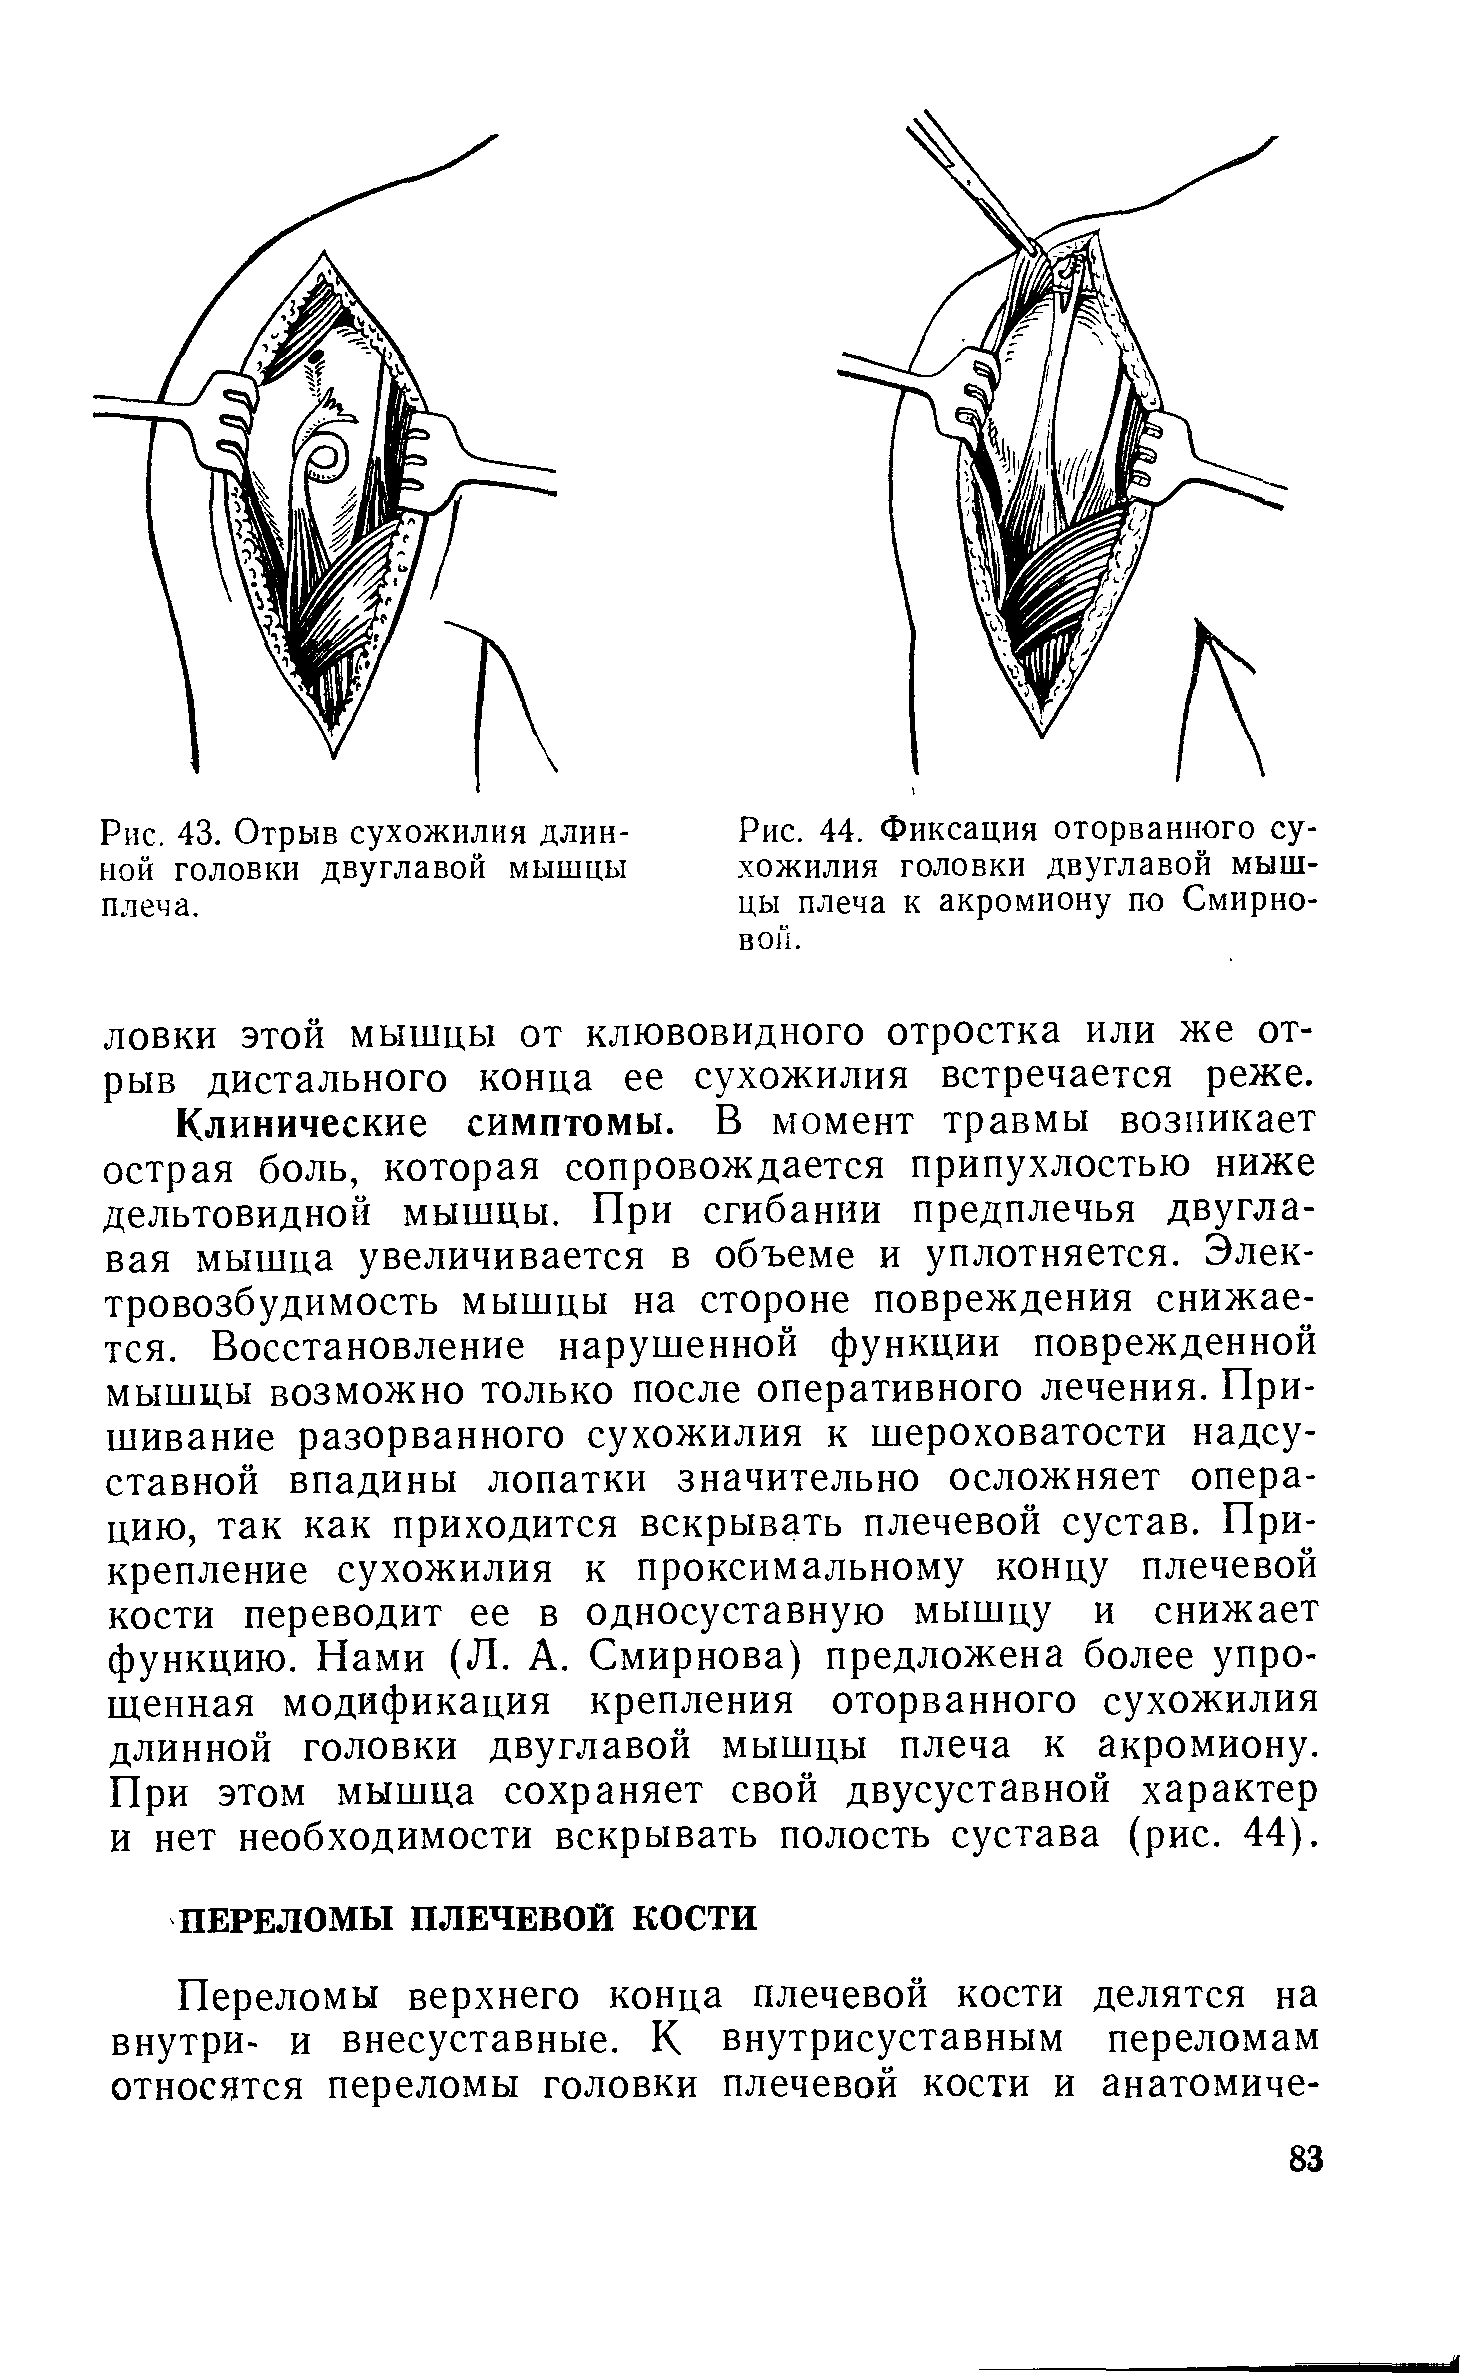 Рис. 44. Фиксация оторванного сухожилия головки двуглавой мышцы плеча к акромиону по Смирновой.